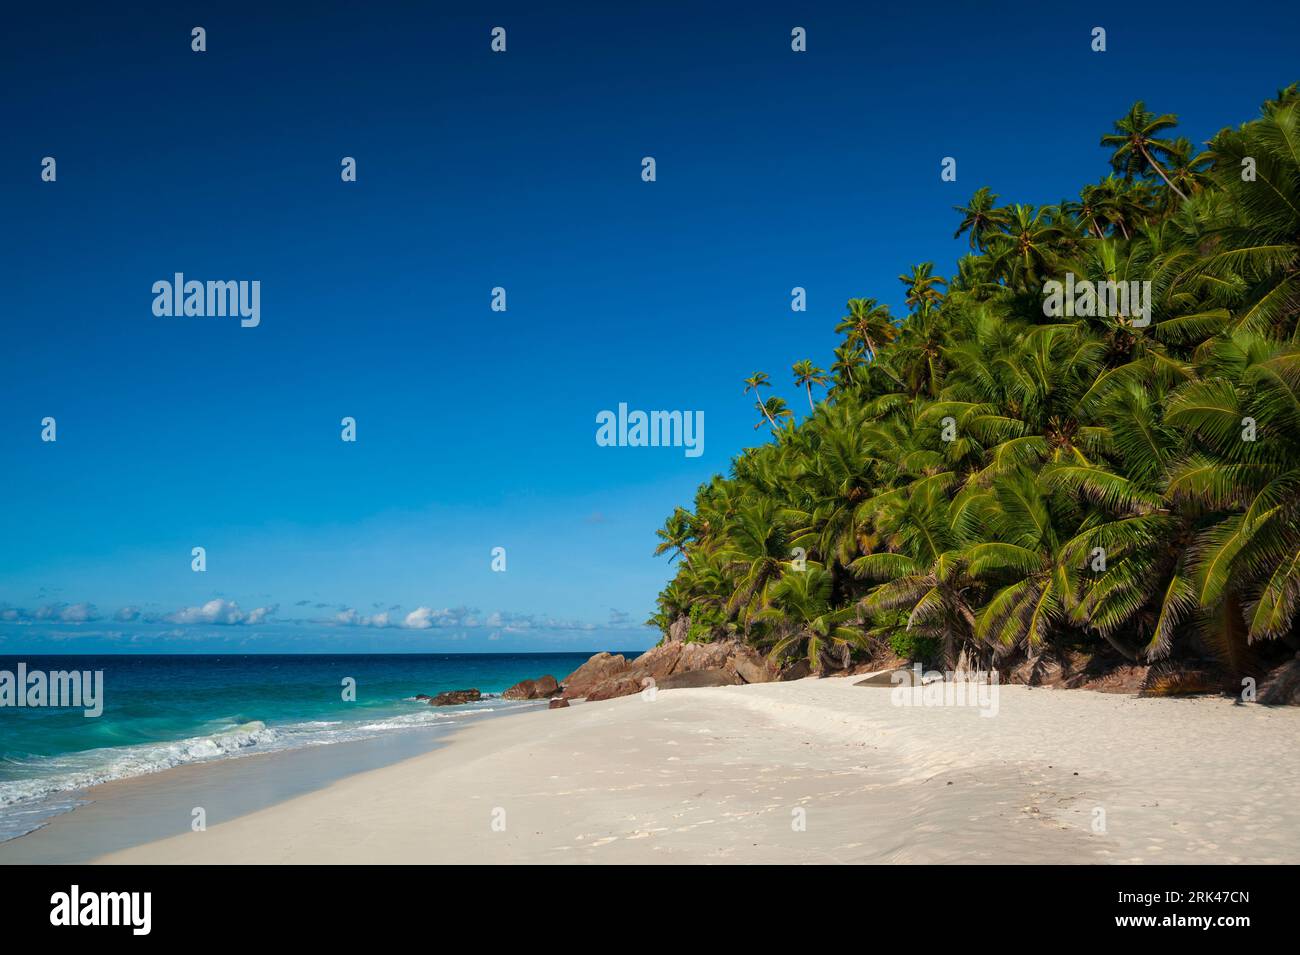 Eine große Palmengruppe an einem tropischen Sandstrand im Indischen Ozean. Anse Victorin Beach, Fregate Island, Republik Seychelle Stockfoto